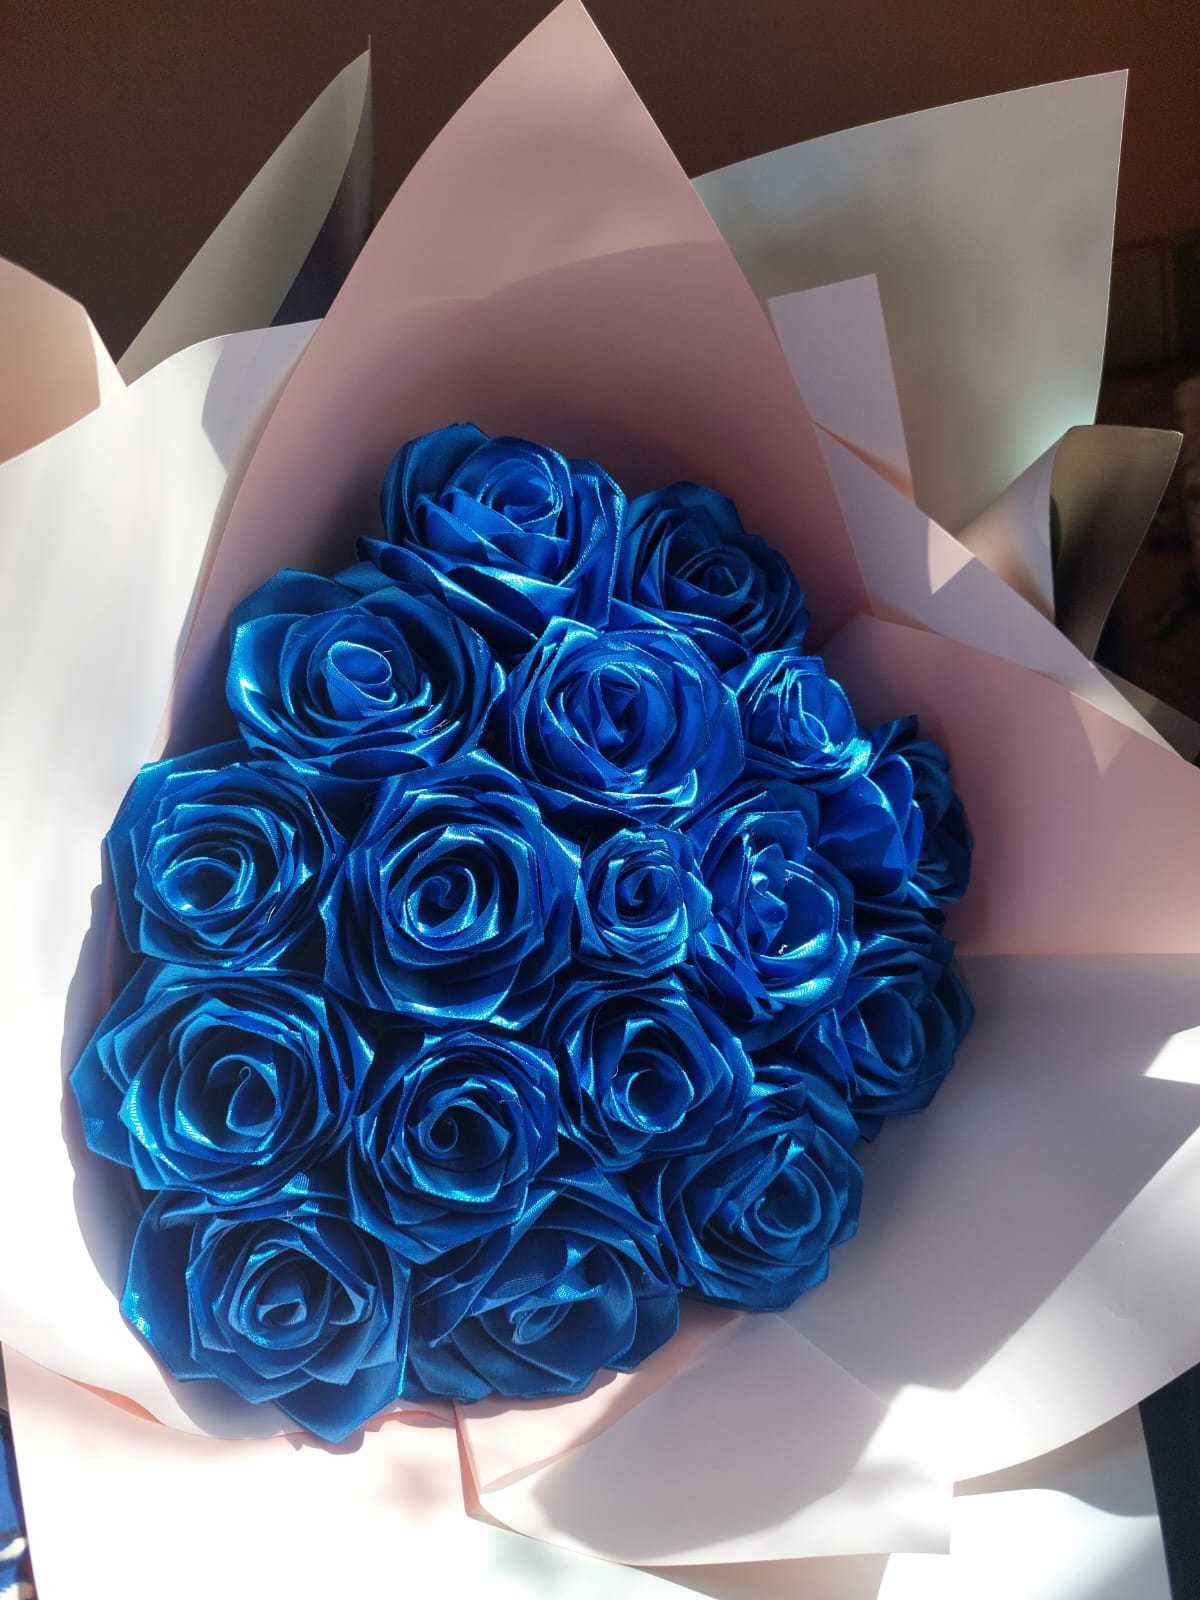 Букеты роз из атласных лент / Доставка цветов Актобе